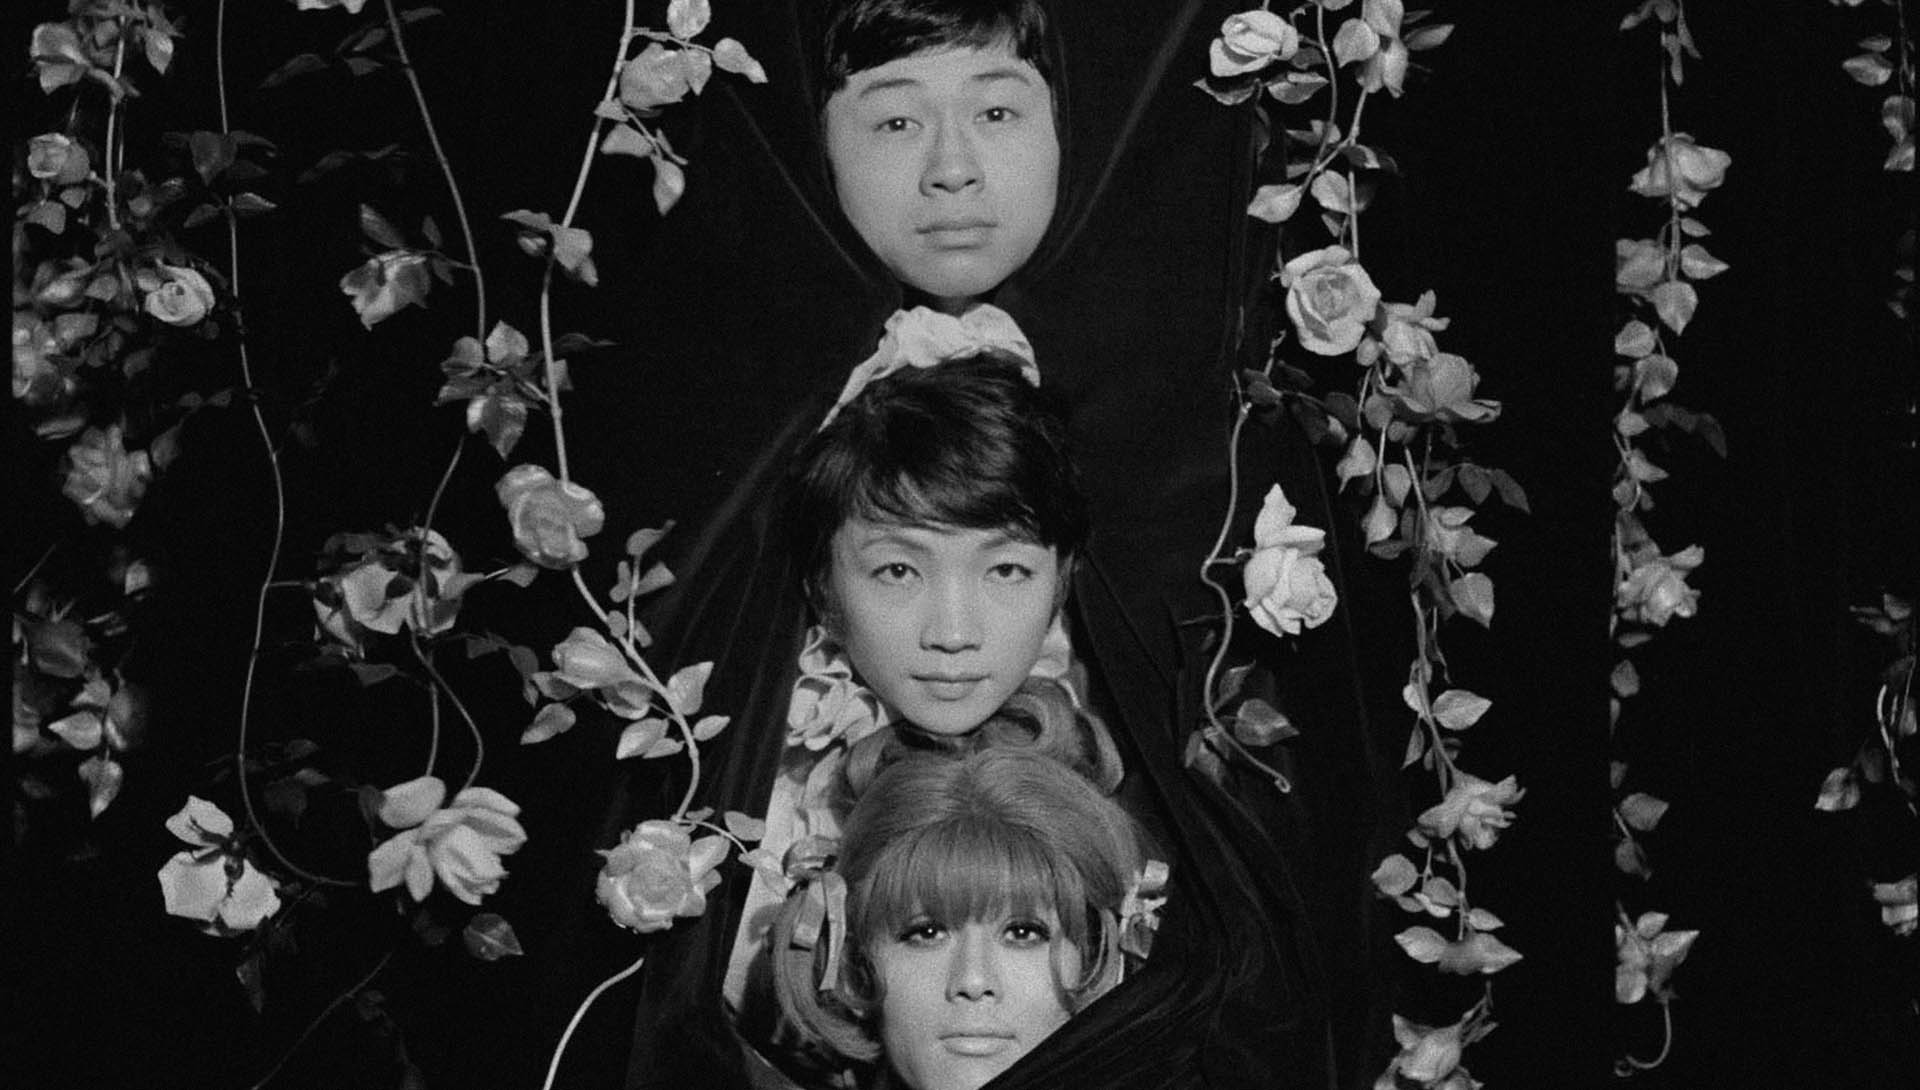 Les Funérailles des roses de Toshio Matsumoto